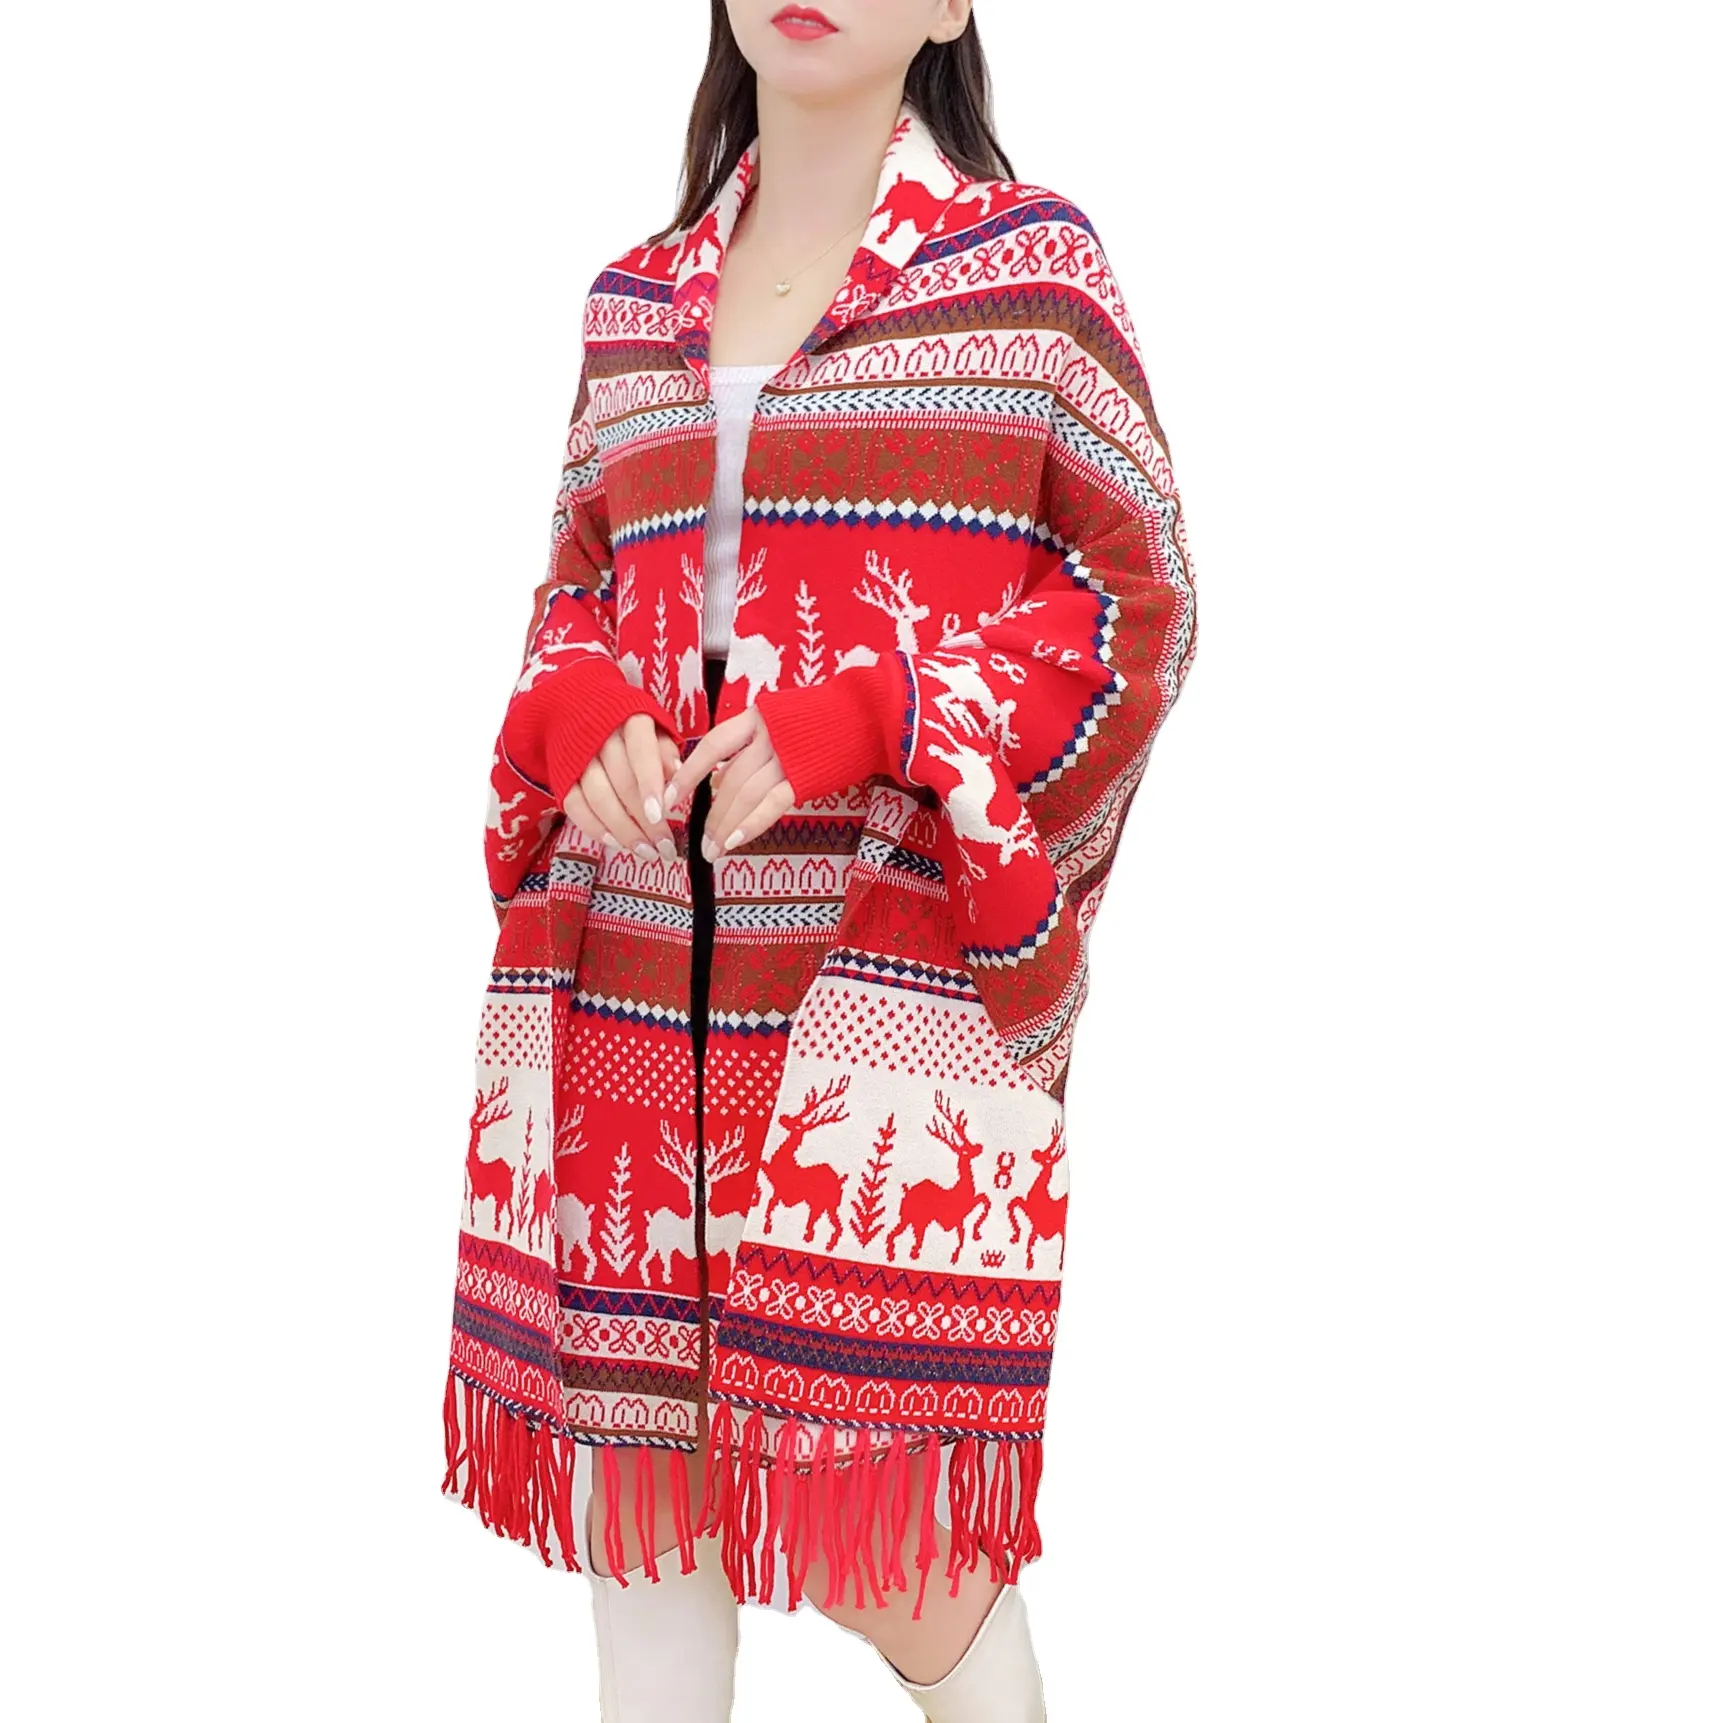 Weihnachten warm Luxus lose Modedesign Boho Farbe passend zu verschiedenen Mustern Frauen lässig Nähte gestrickt Schal Schal